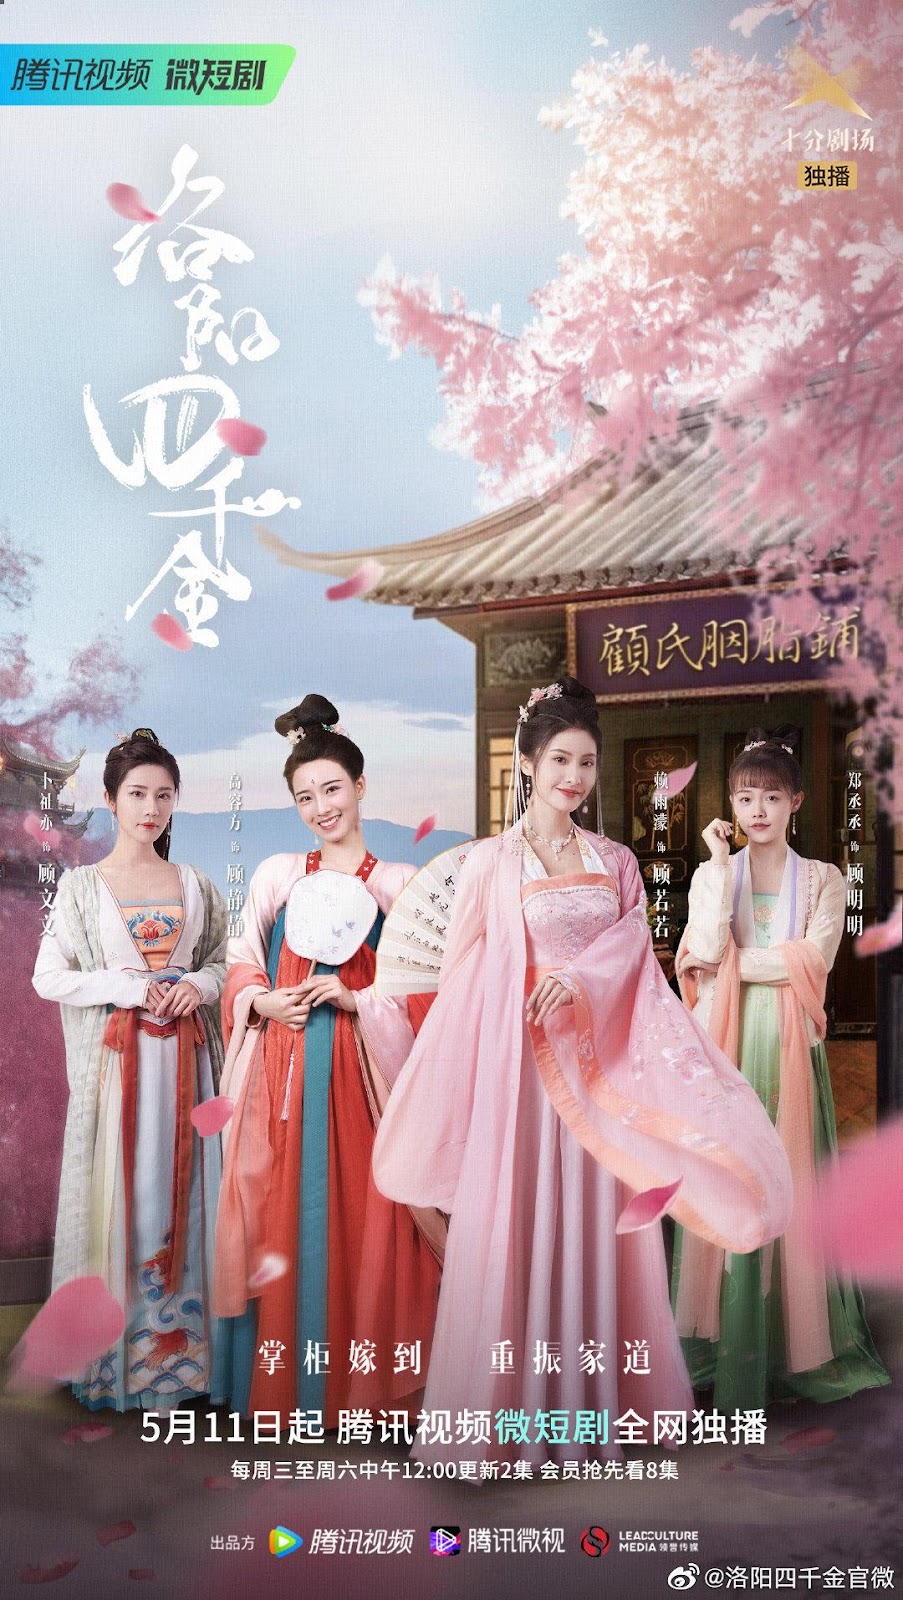 รีวิวมินิซีรีย์ สี่ดรุณีแห่งลั่วหยาง (The Four Daughter of Luoyang) 1